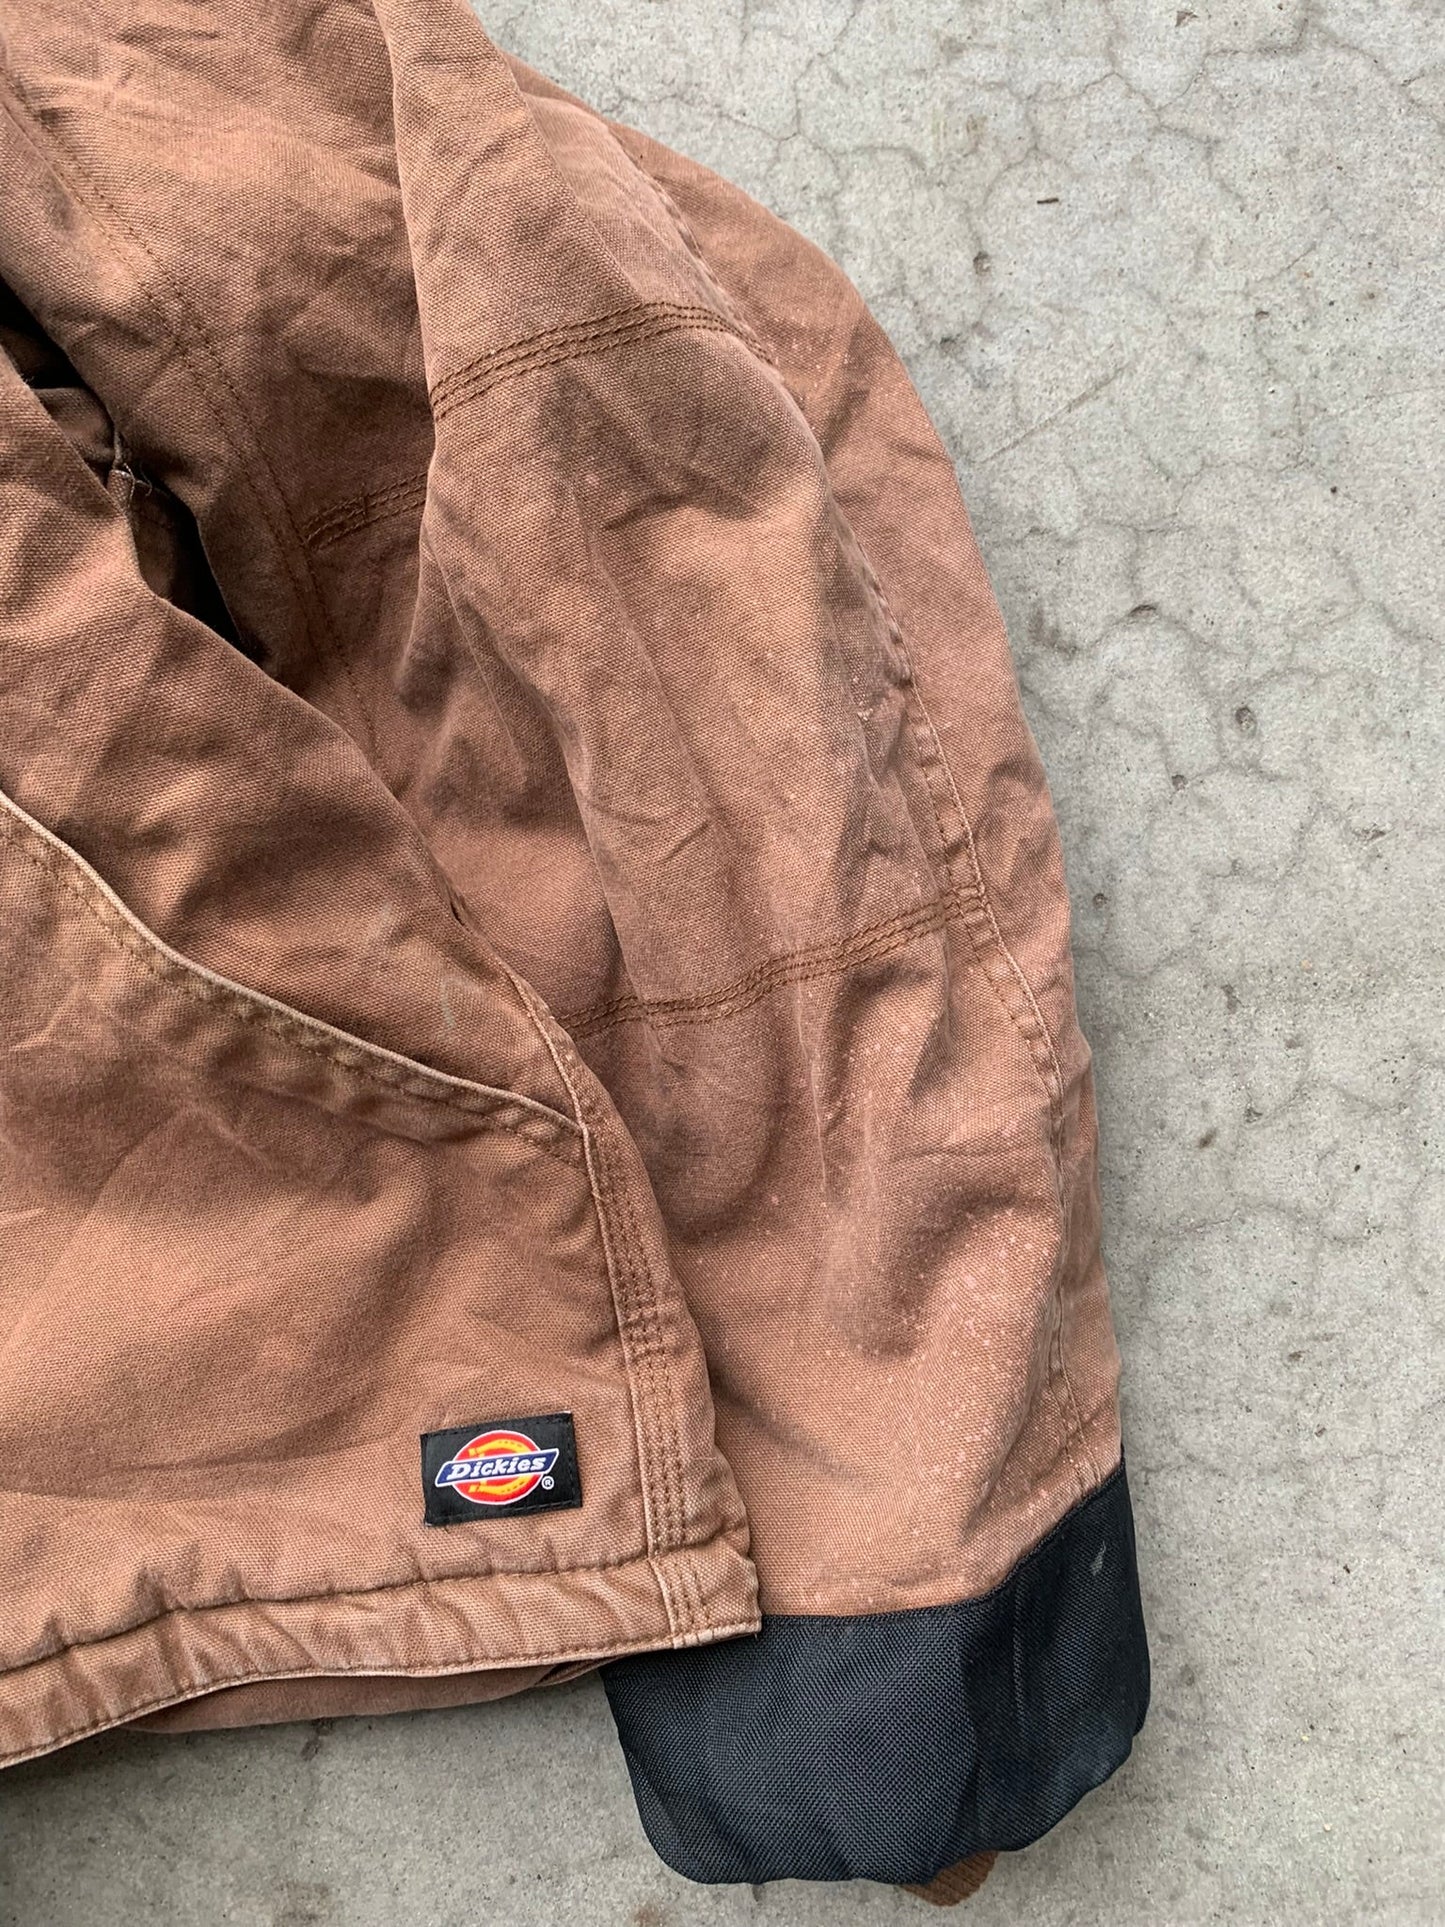 (XL/2X) Dickies Hooded Work Jacket